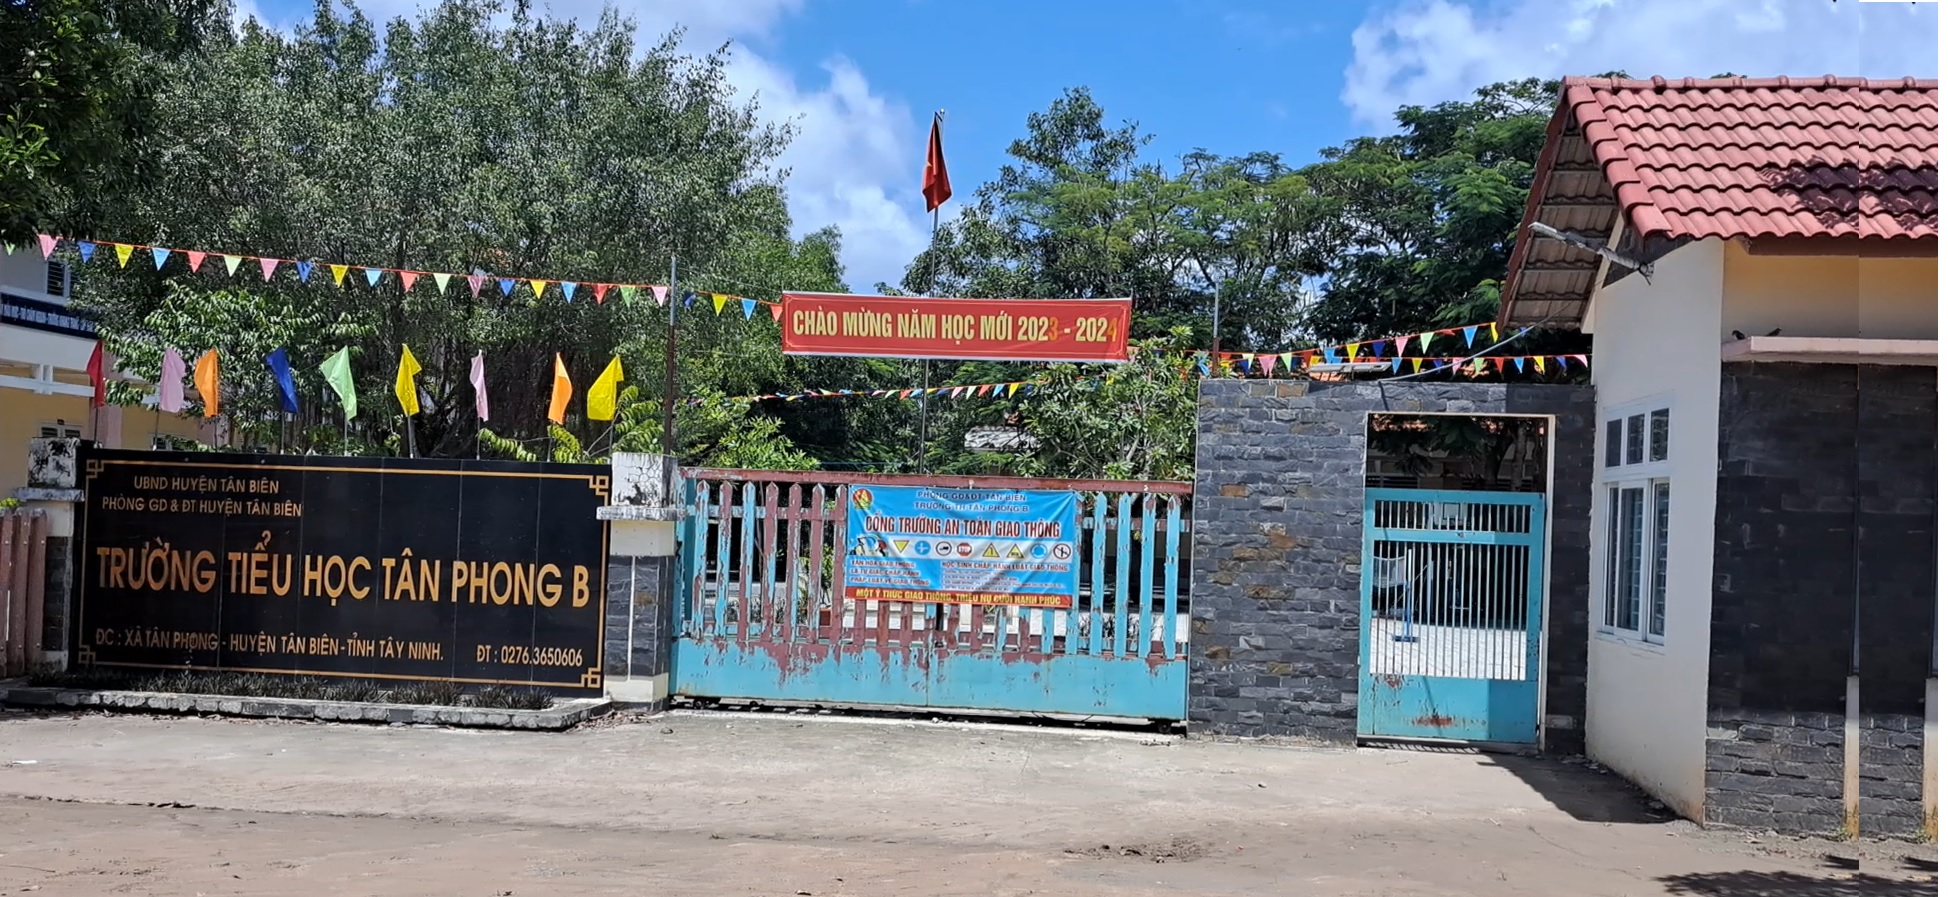 Bán 924m2 đất thổ cư 170m2 gần trường học Tân Phong B, Tân Biên, Tây Ninh